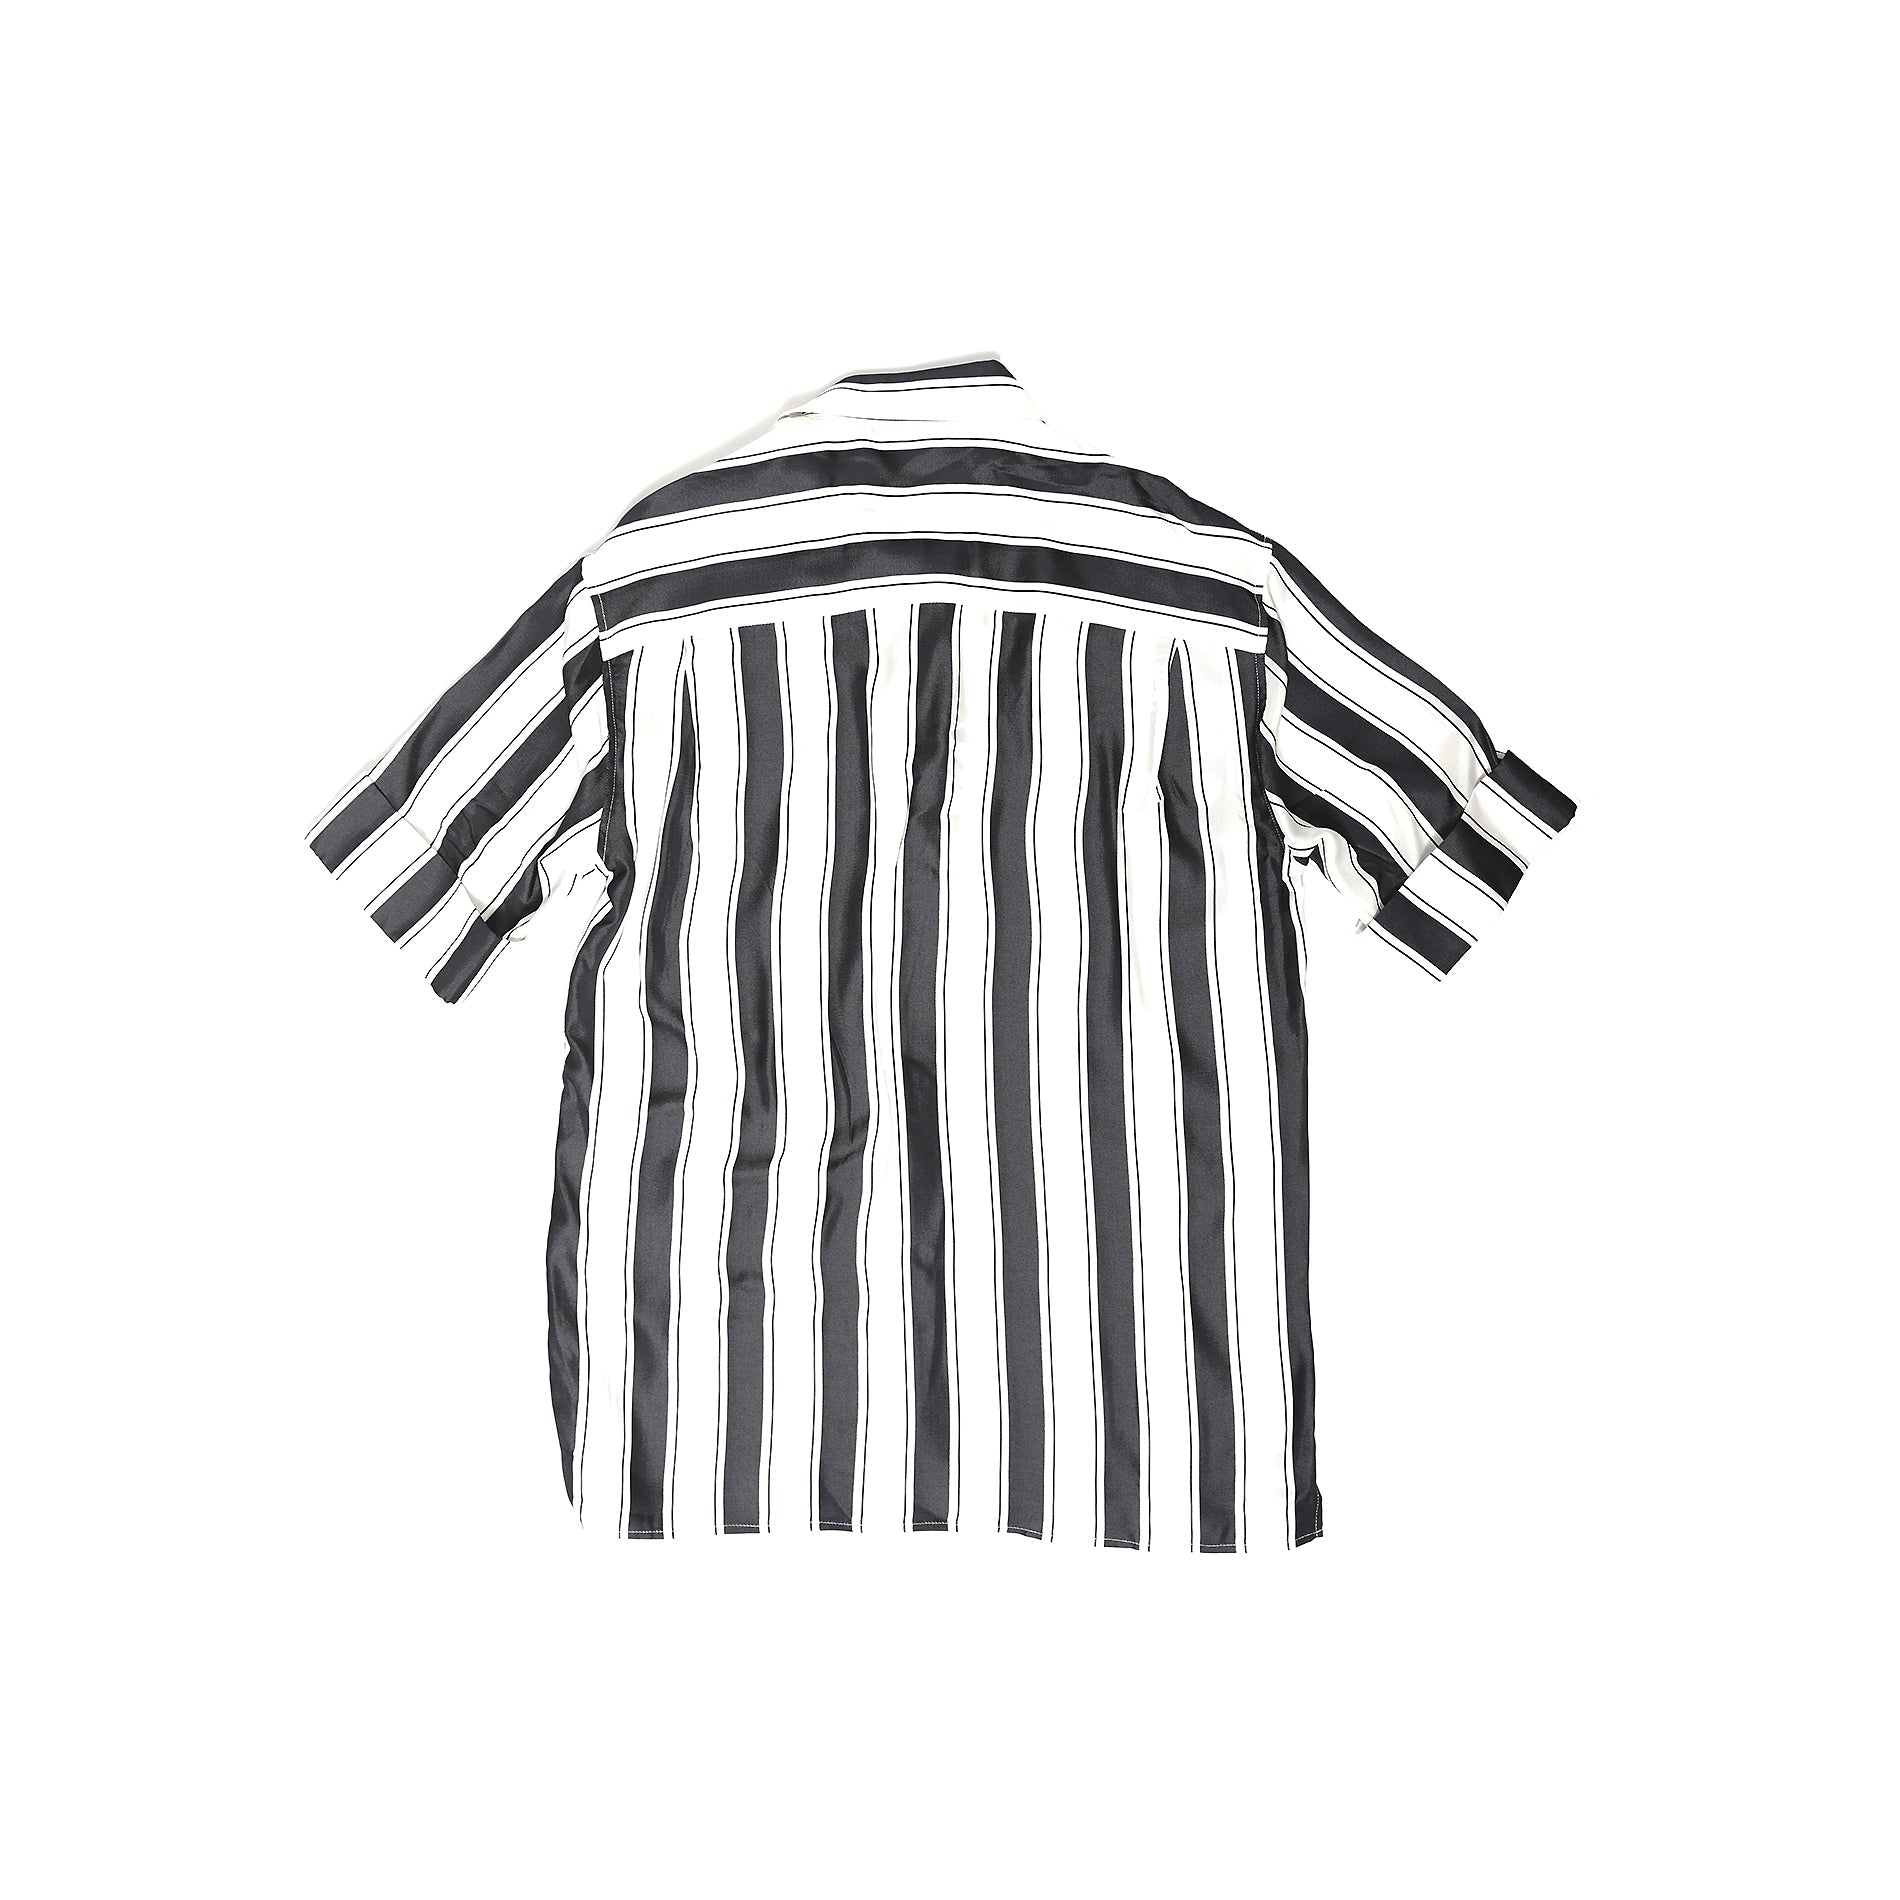 Haider Ackermann SS17 Striped Shortsleeve Shirt